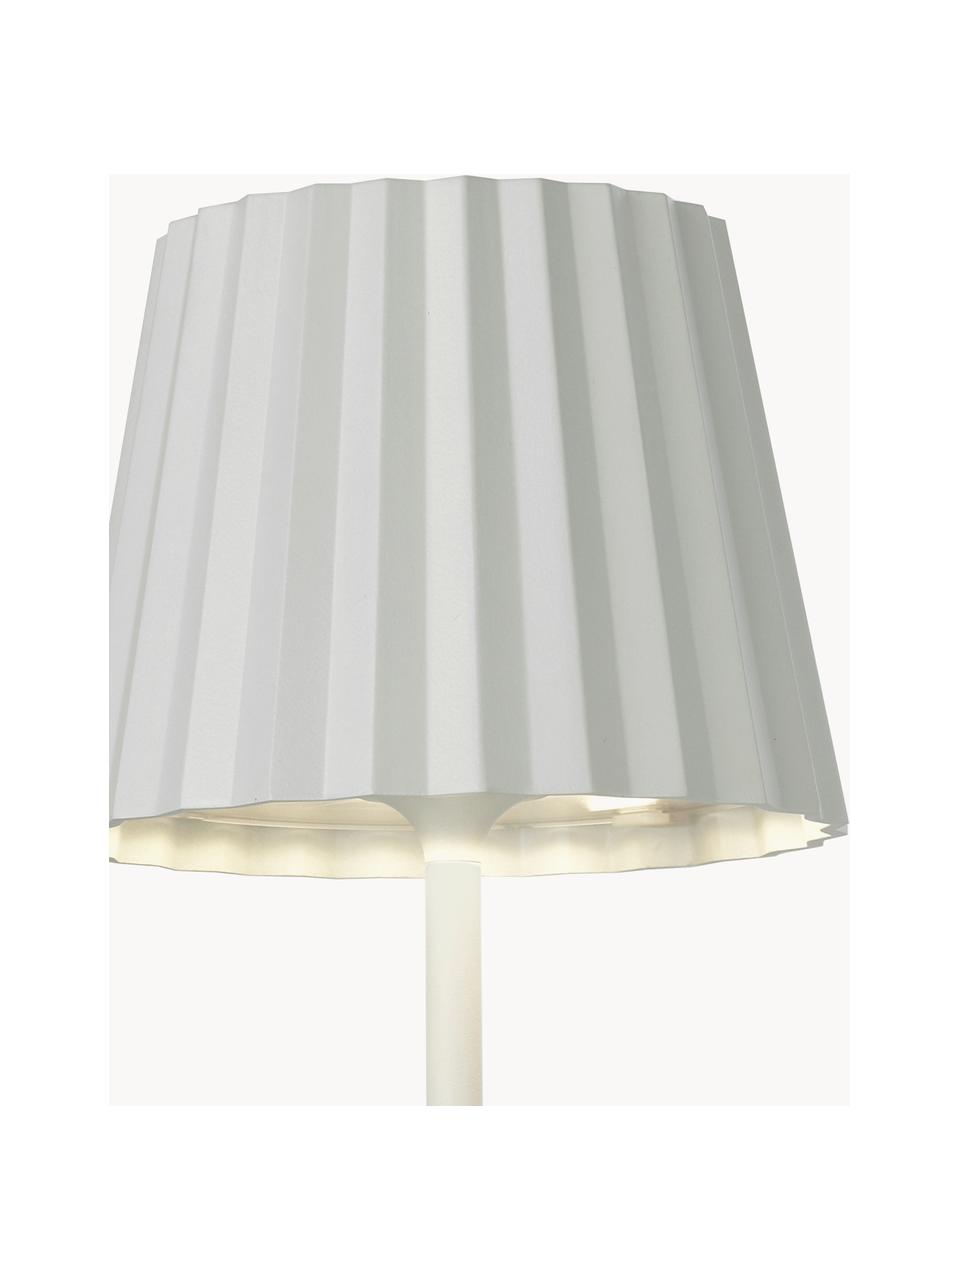 Lampada mobile da tavolo per esterni a LED  dimmerabile Trellia, Paralume: alluminio verniciato, Bianco, Ø 12 x Alt. 38 cm